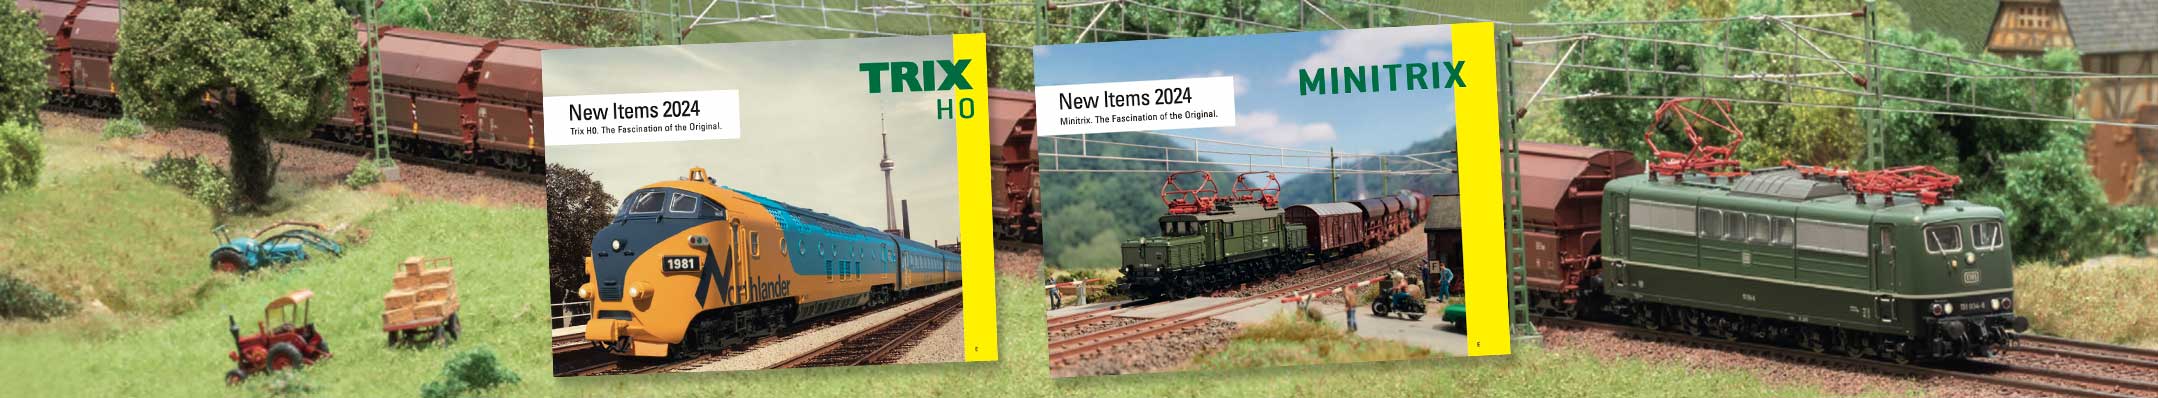 Trix & Minitrix 2024 New Items